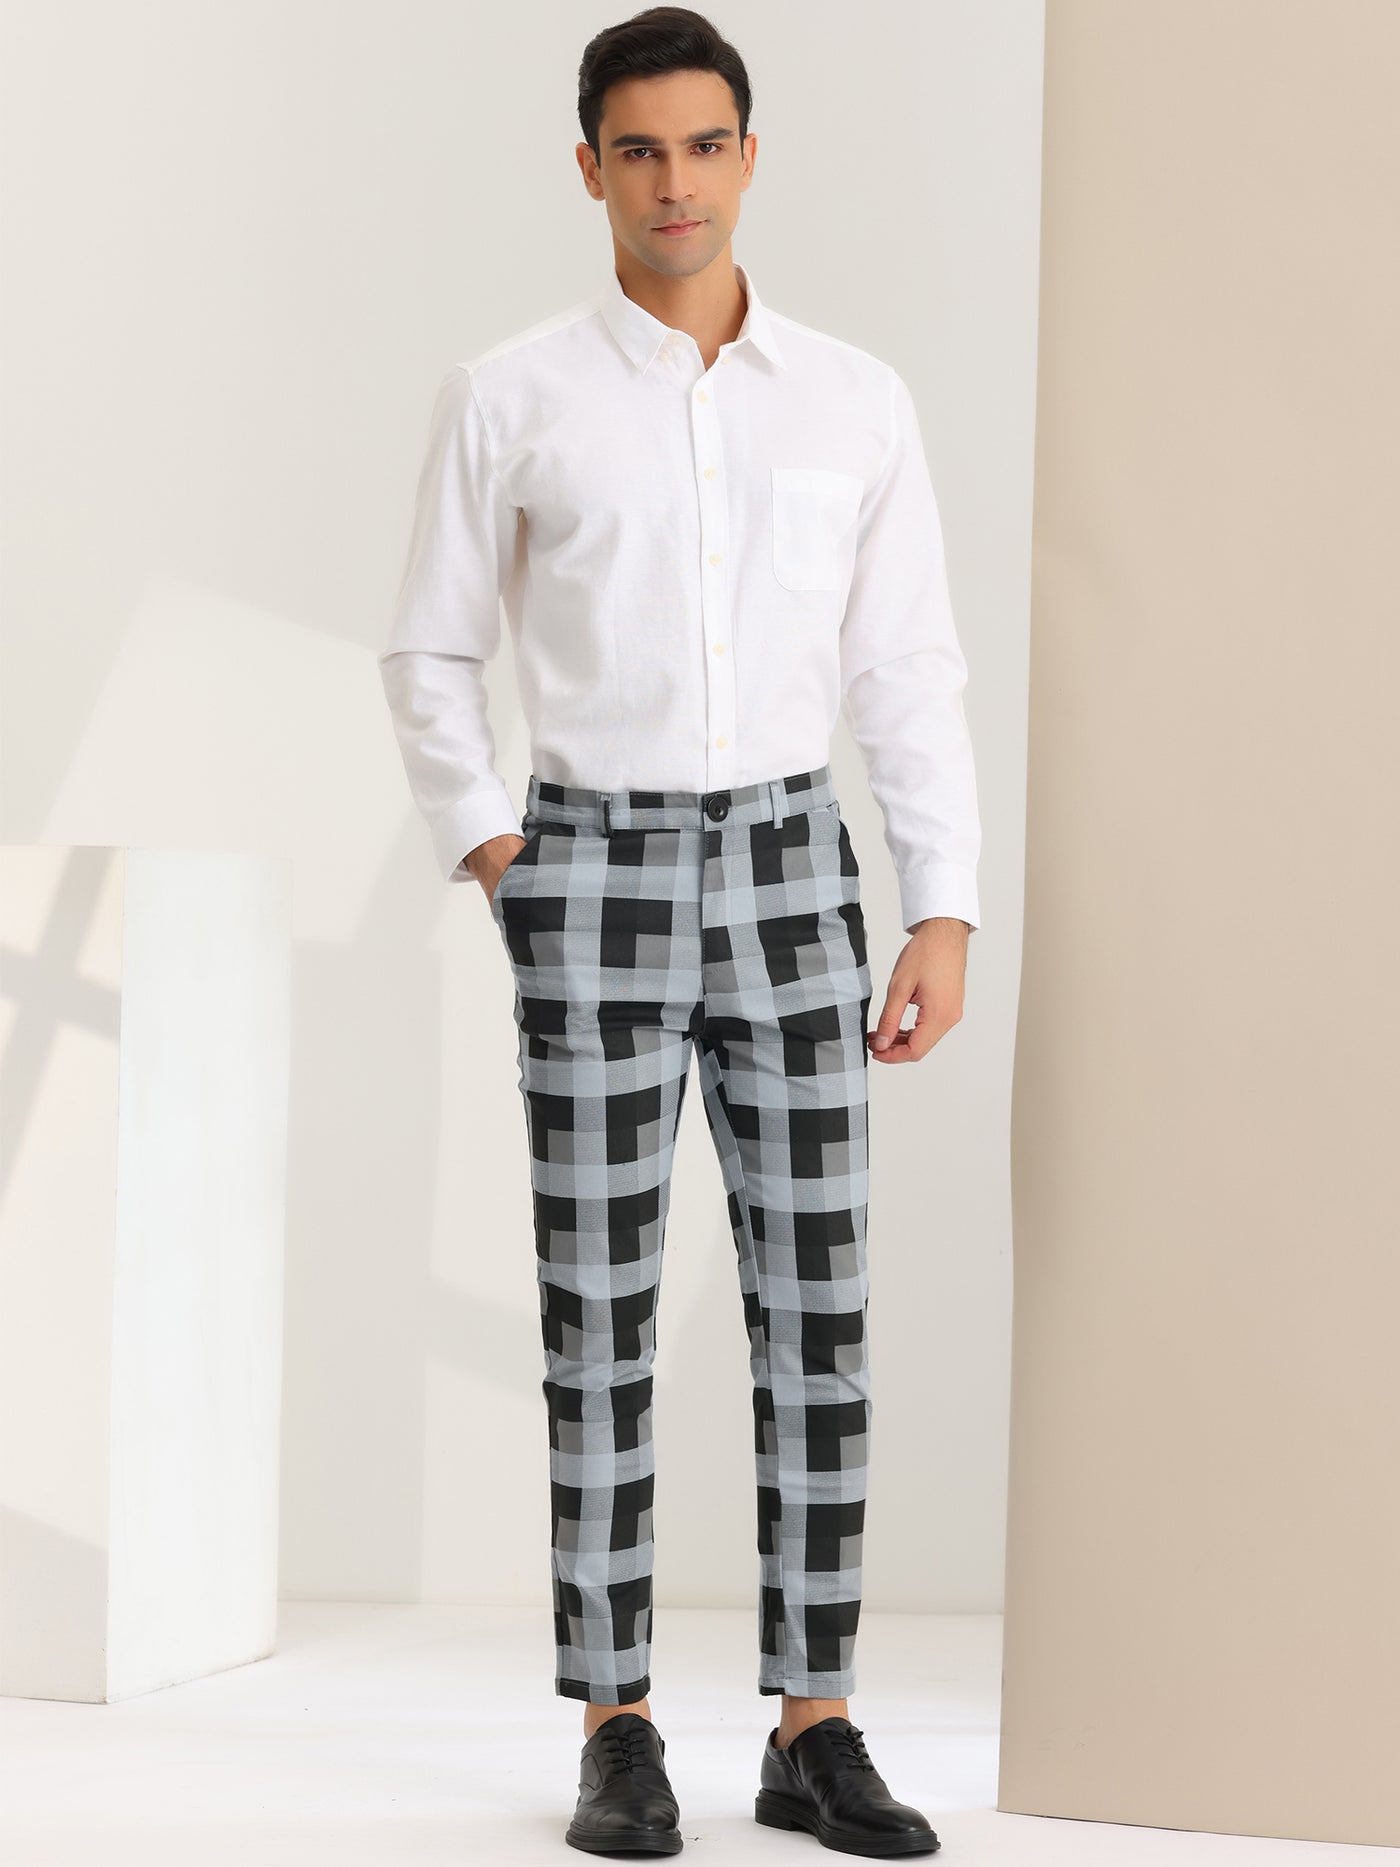 Bublédon Men's Dress Plaid Pants Classic Fit Flat Front Business Prom Trousers